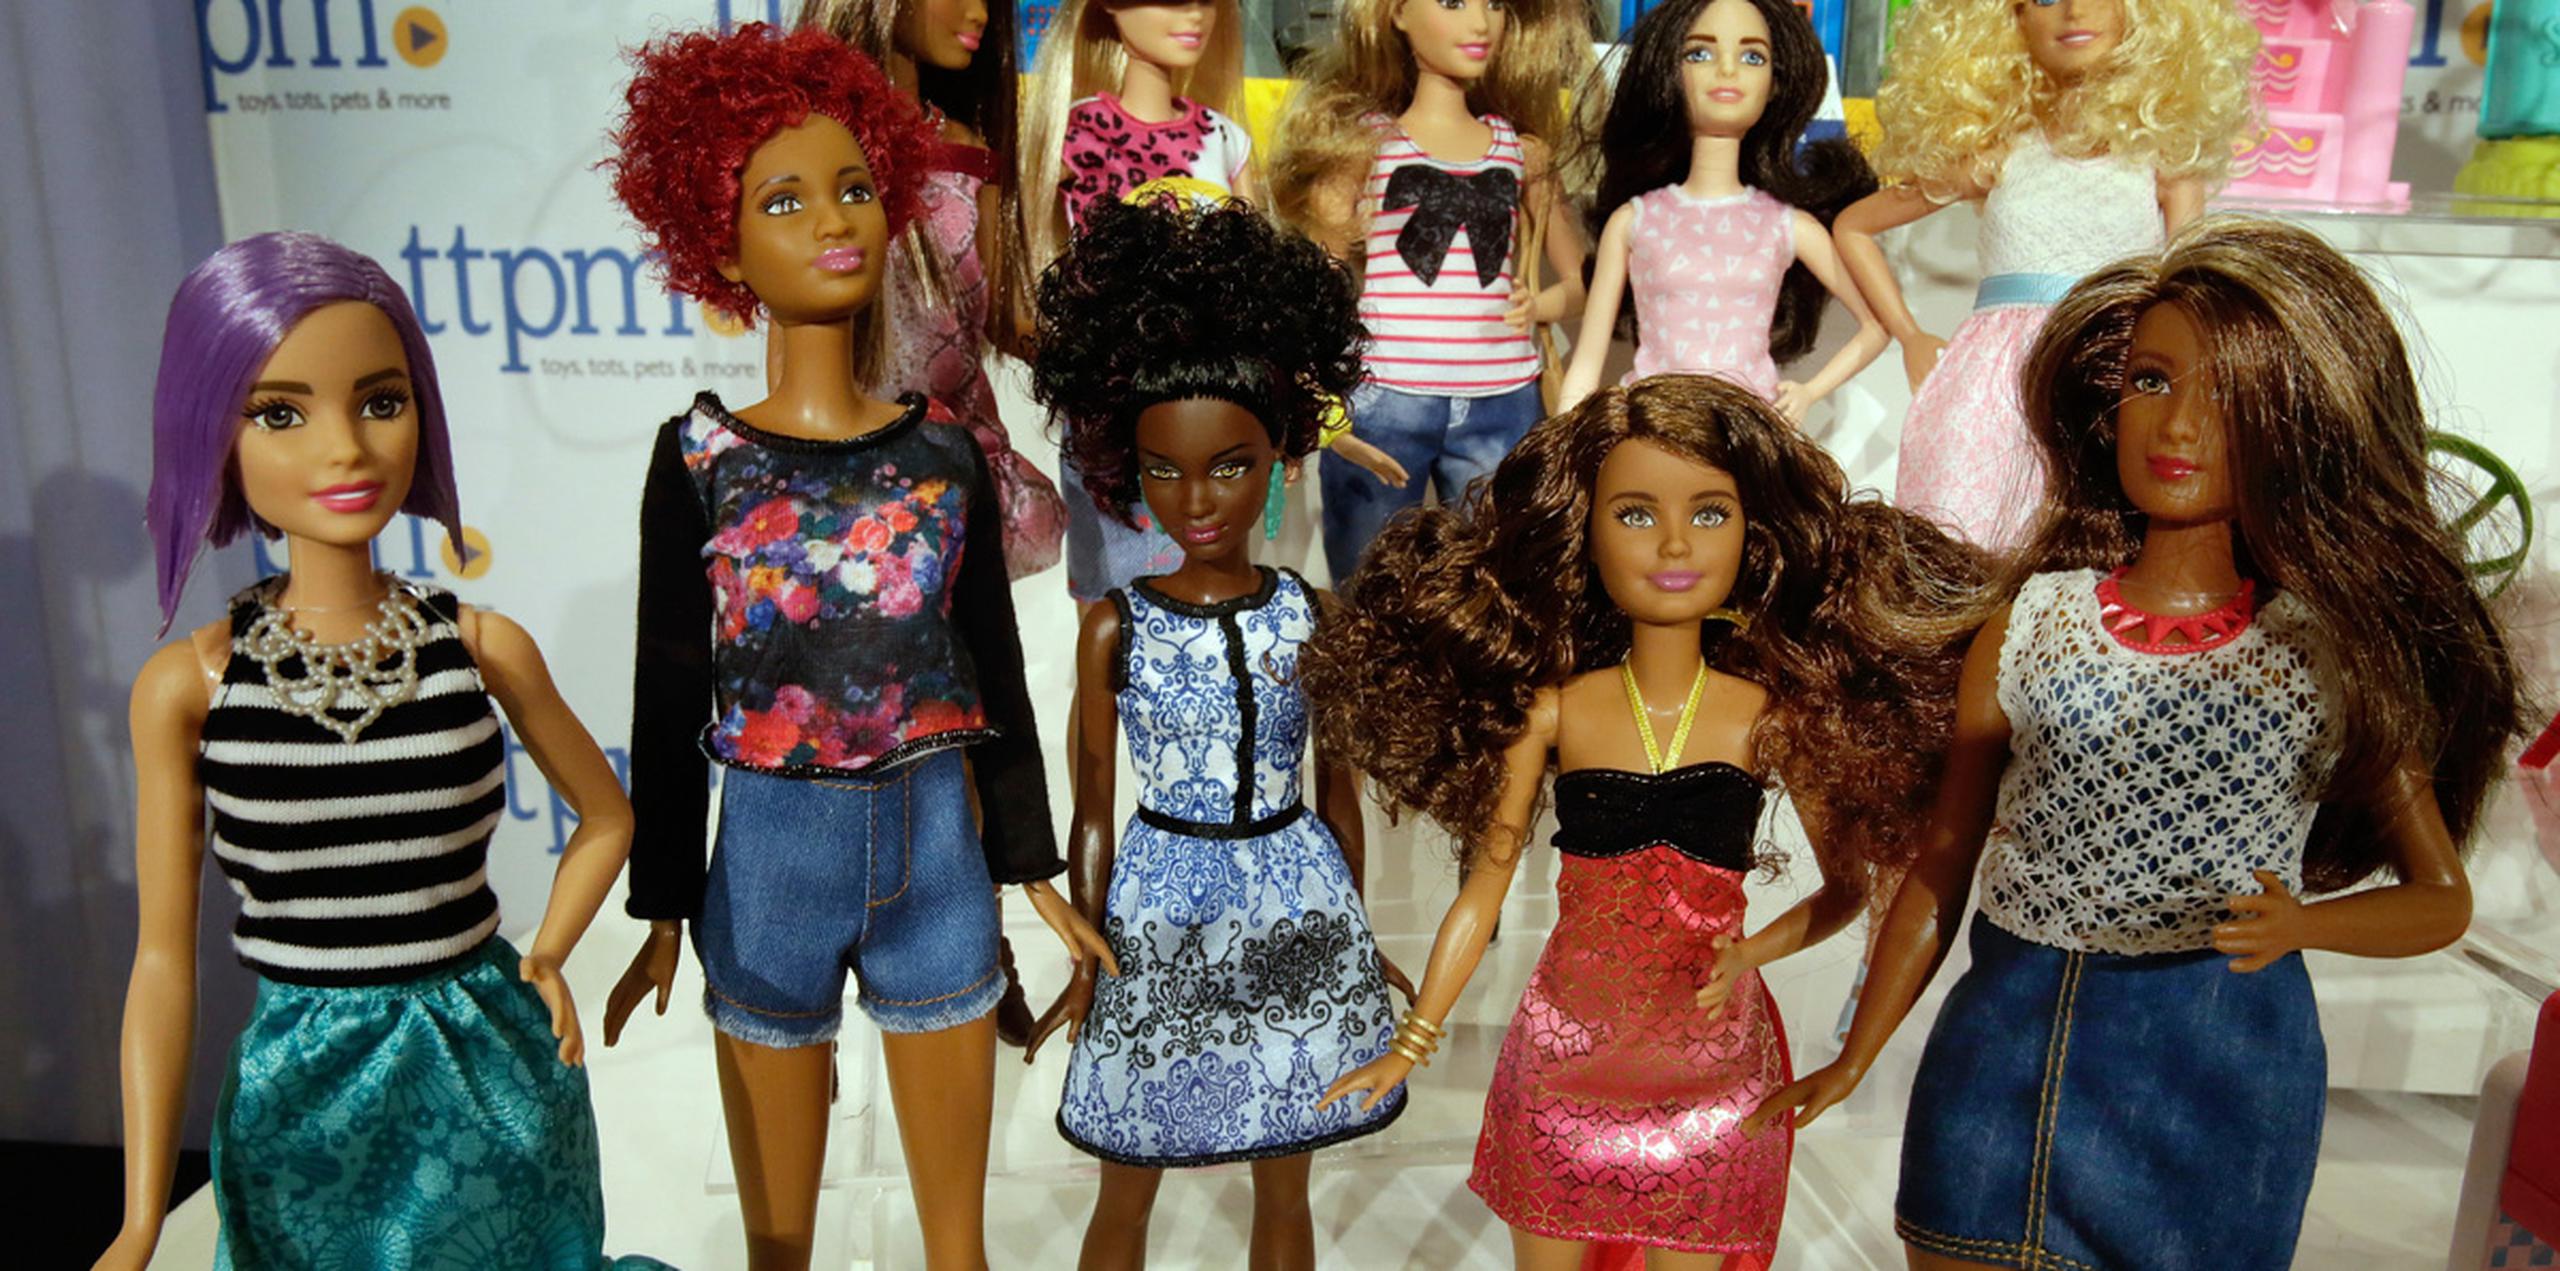 Los estantes de las tiendas tendrán las muñecas Barbie con más variedad en la forma del cuerpo, del color de ojos y de rasgos faciales.  (AP)